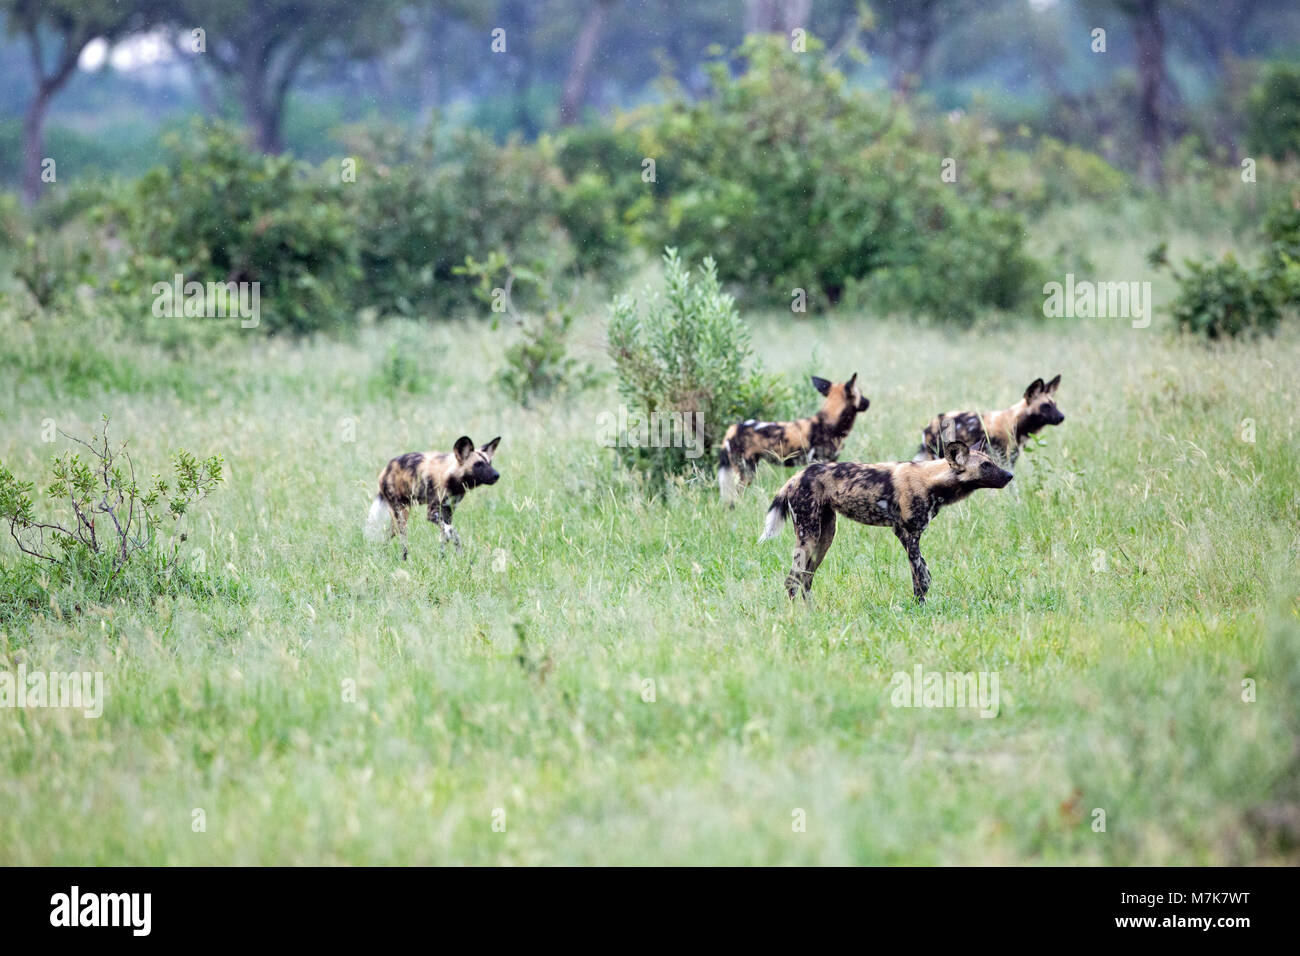 Afrikanische Jagd Hund, Afrikanischer Wildhund, oder gemalten Hund oder Wolf, lackiert (Lycaon pictus). Vier pack Mitglieder positionieren sich um Bush, re Stockfoto